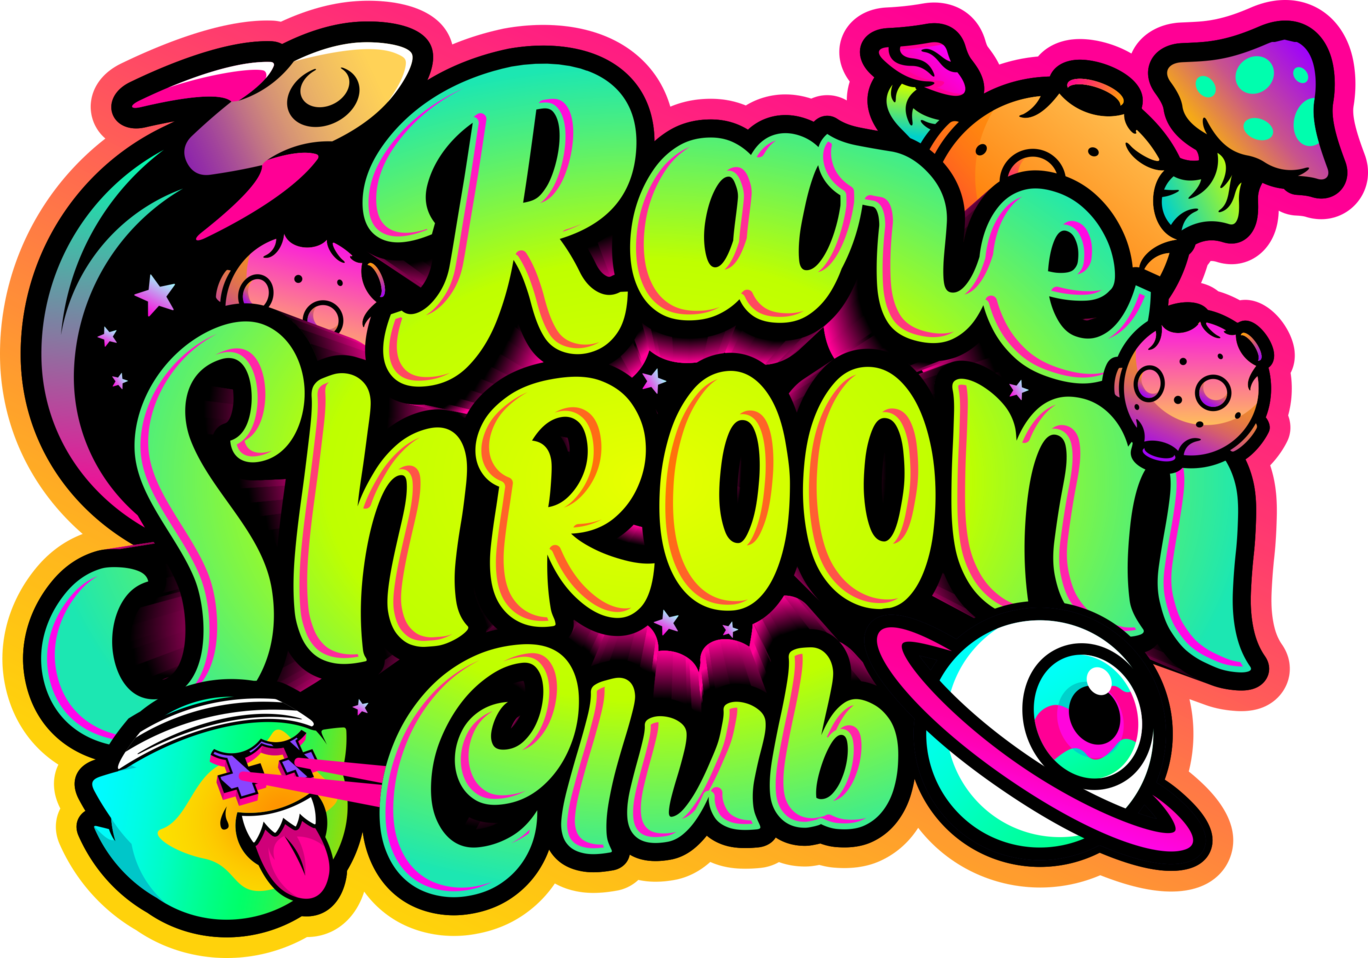 Rare Shroom Club